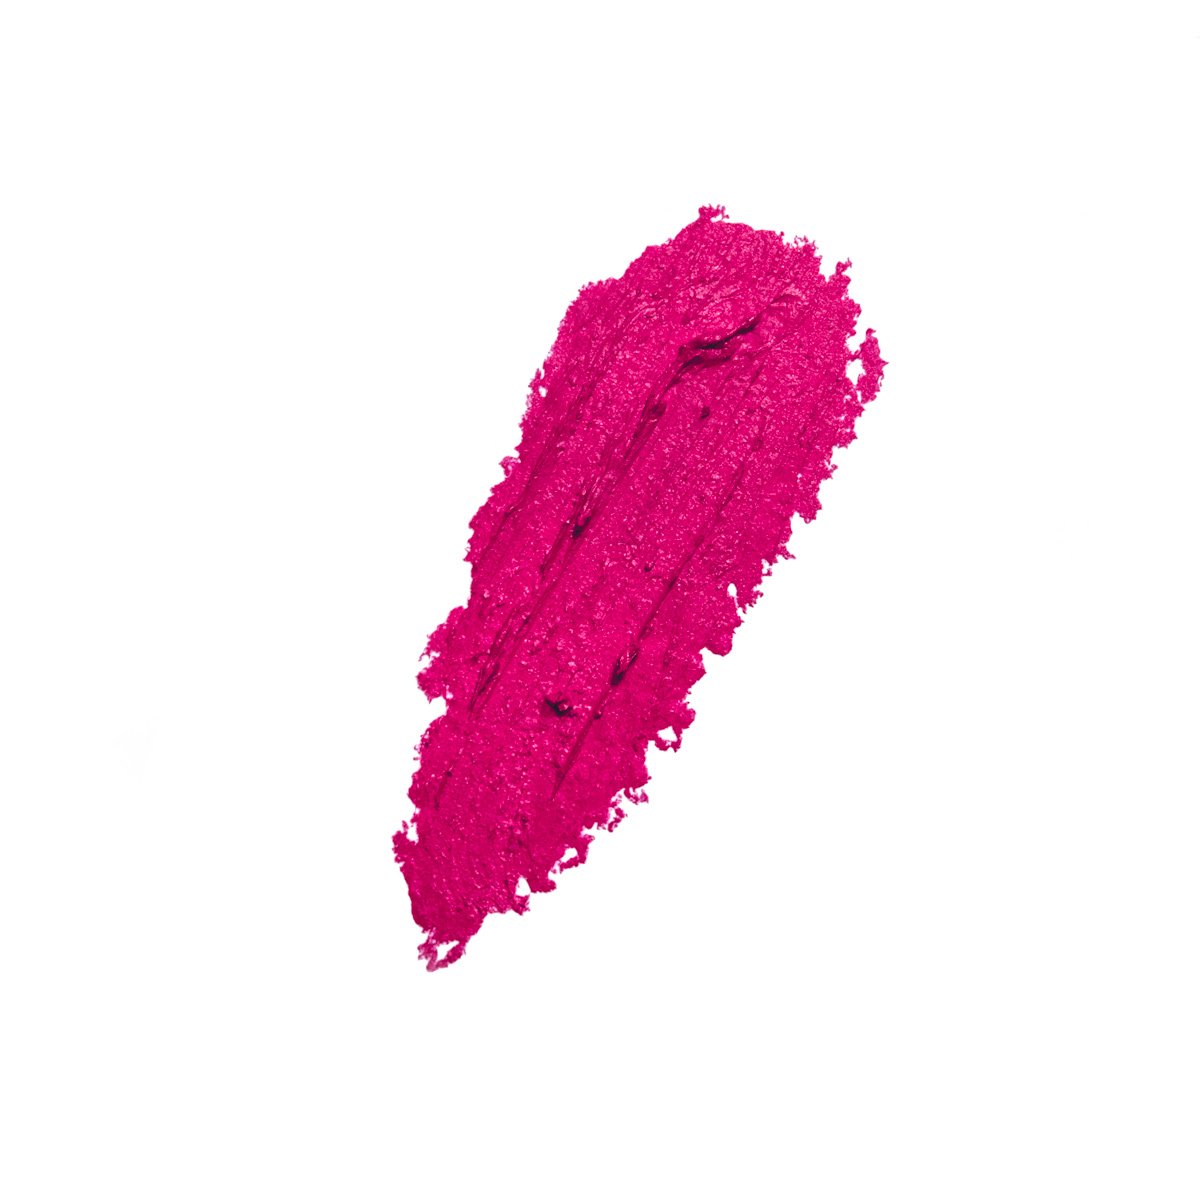 SHOCKING - Pinky Red - bright pink long-wearing matte lipstick